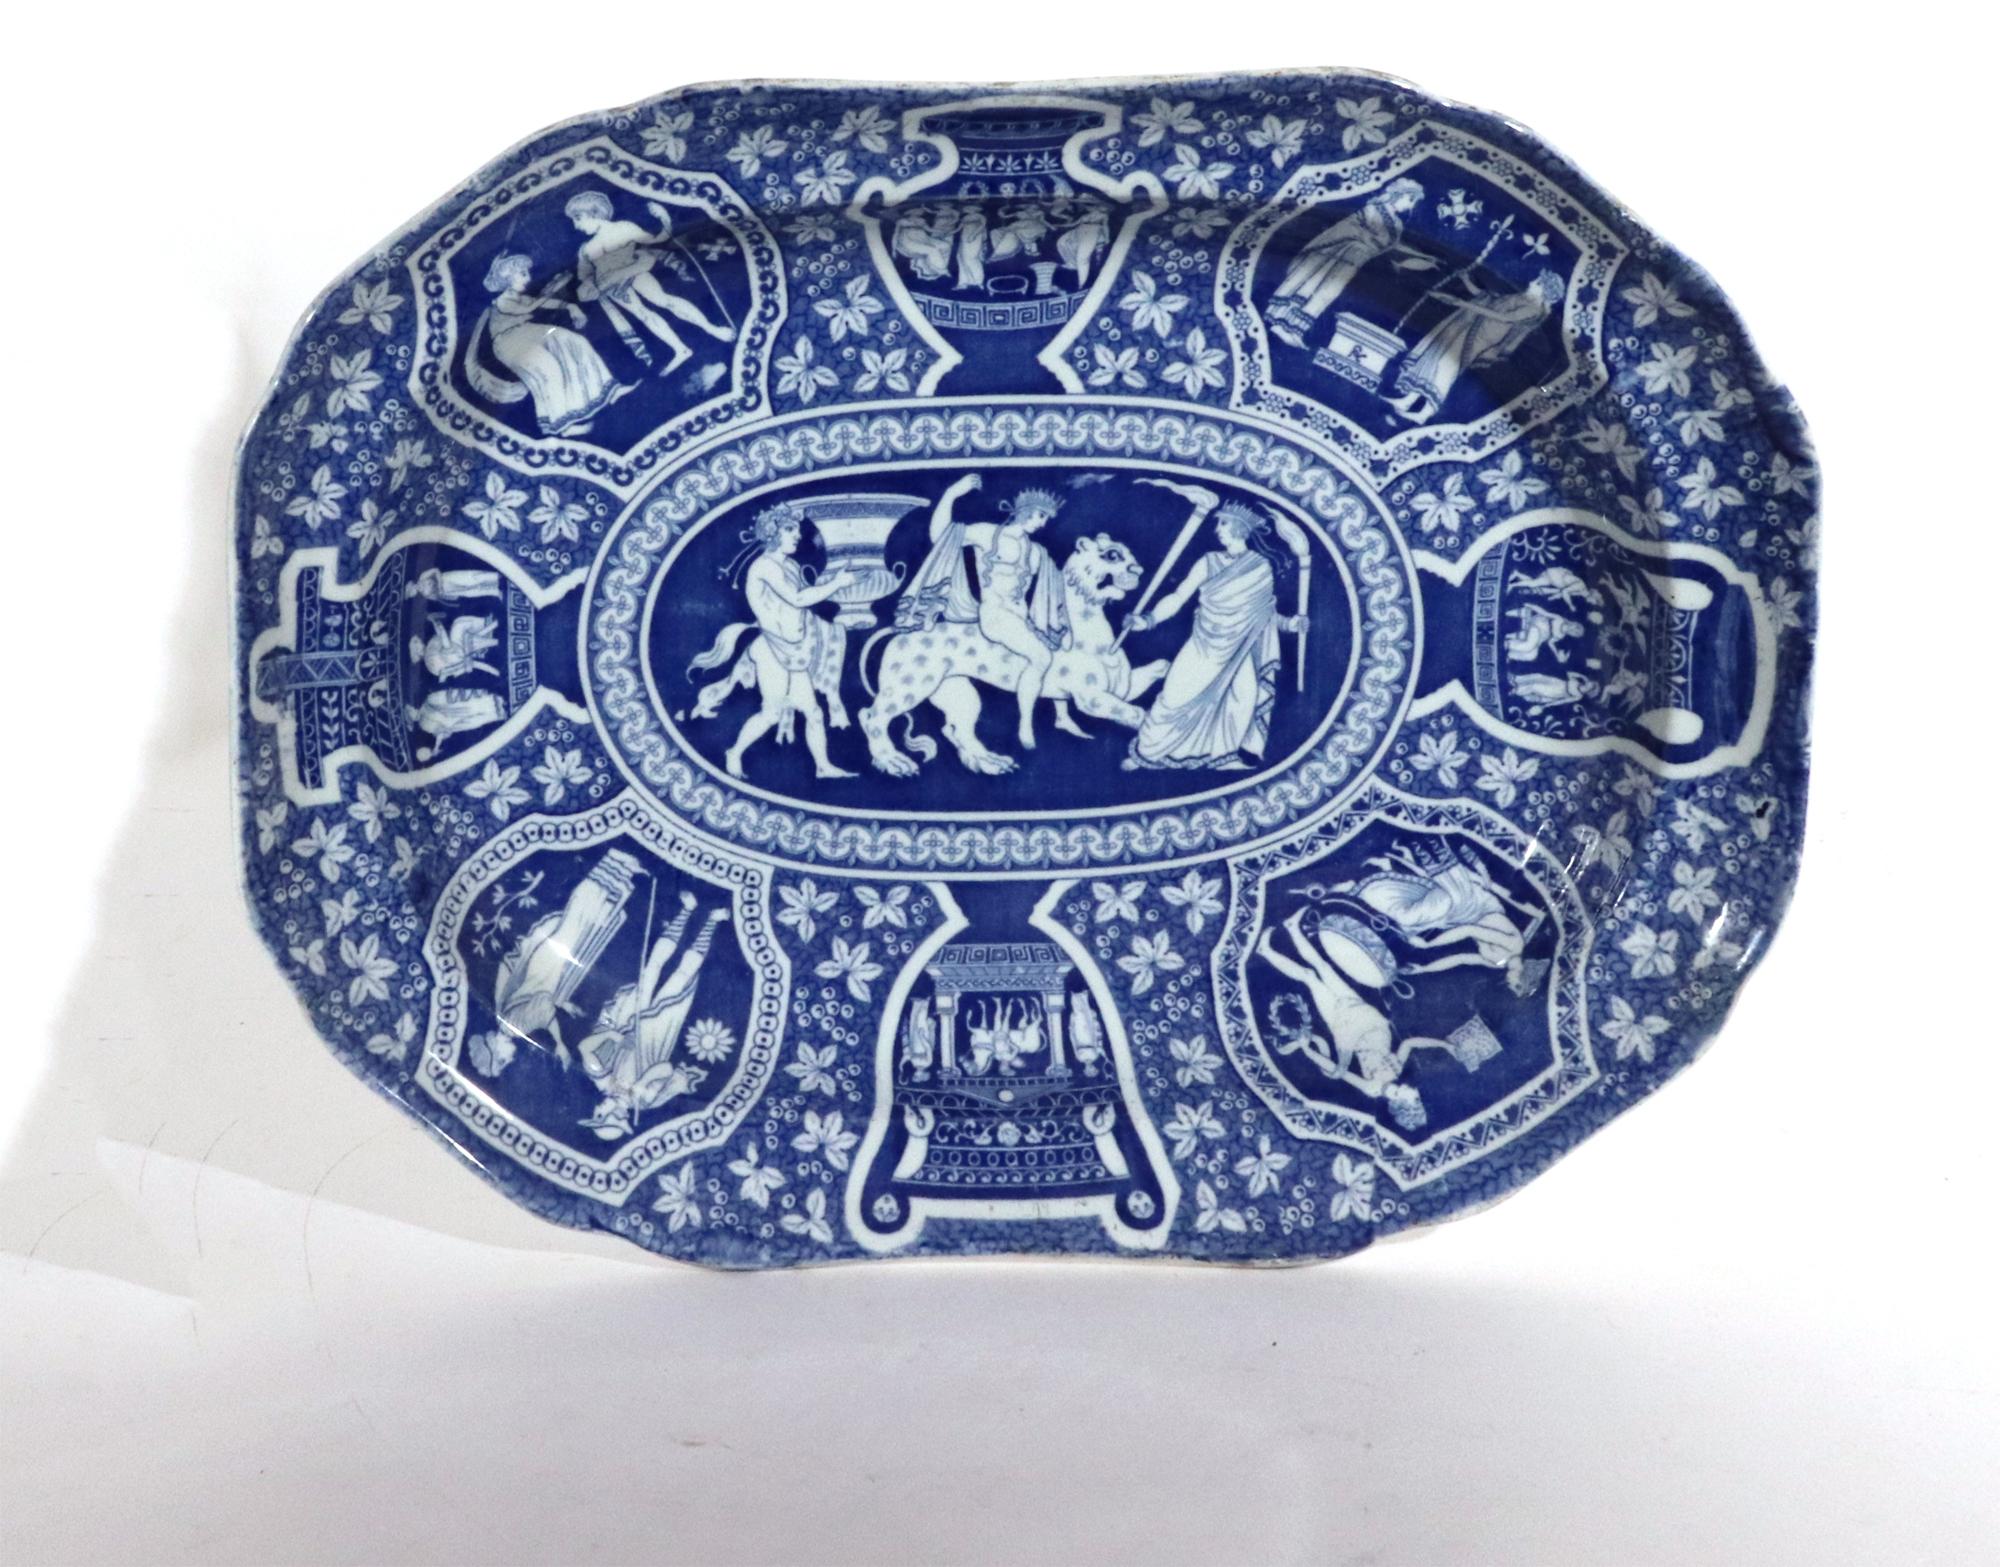 Spode pottery neo-klassischen griechischen Muster blau tief Teller,
Bacchus auf einem Panther,
Frühes 19. Jahrhundert 

Die rechteckige Schale von Spode mit griechischem Muster und abgeschrägten Ecken ist in Blau mit klassizistischen Szenen auf